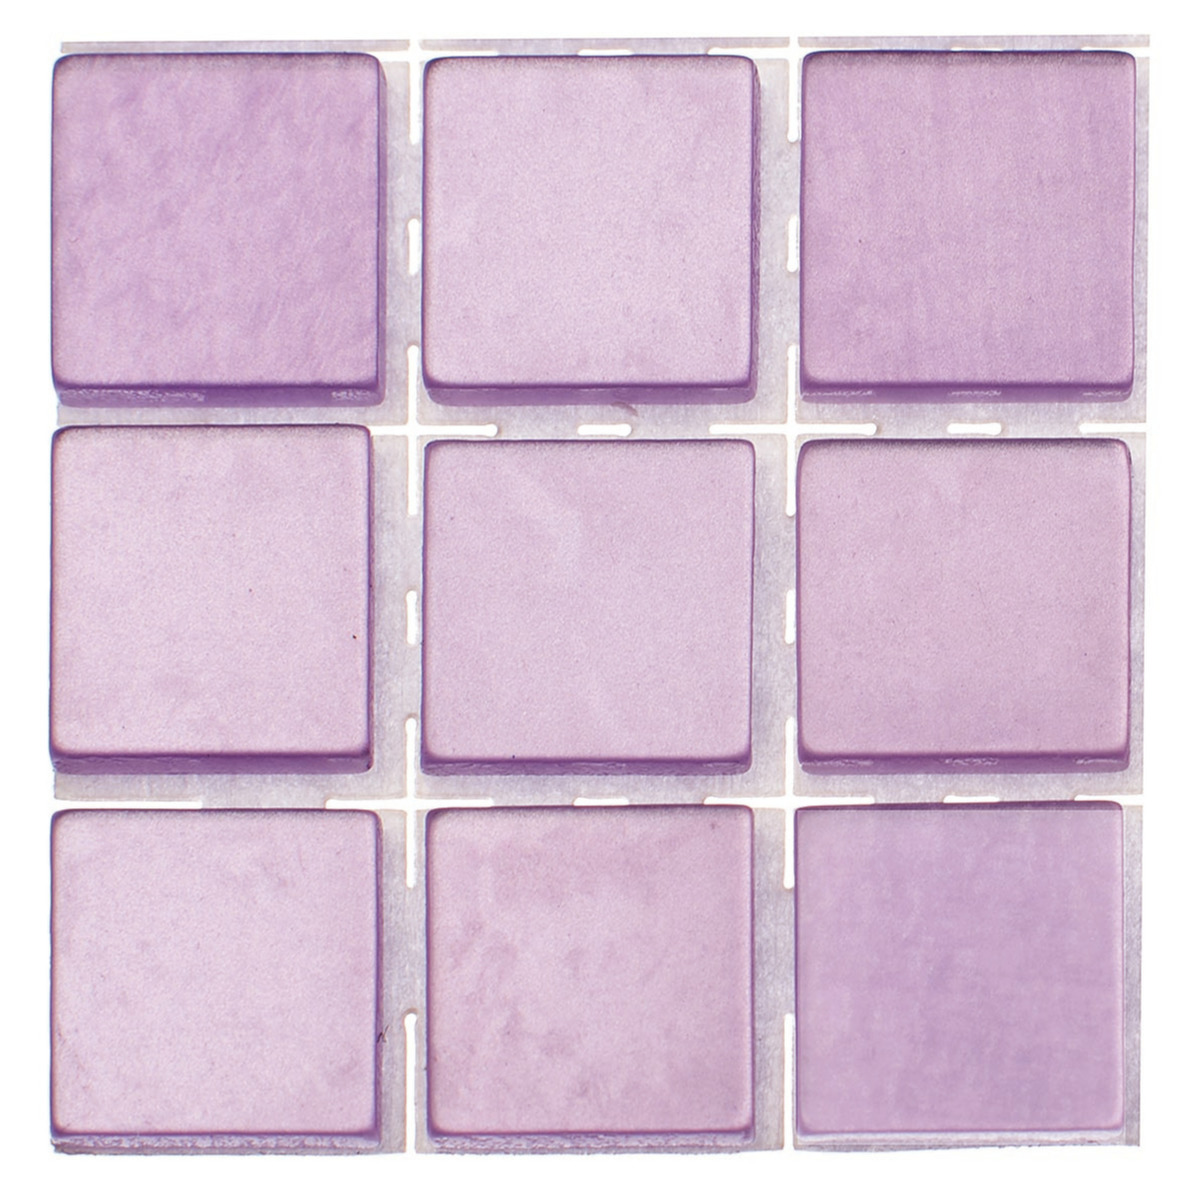 189x stuks mozaieken maken steentjes-tegels kleur lila 10 x 10 x 2 mm